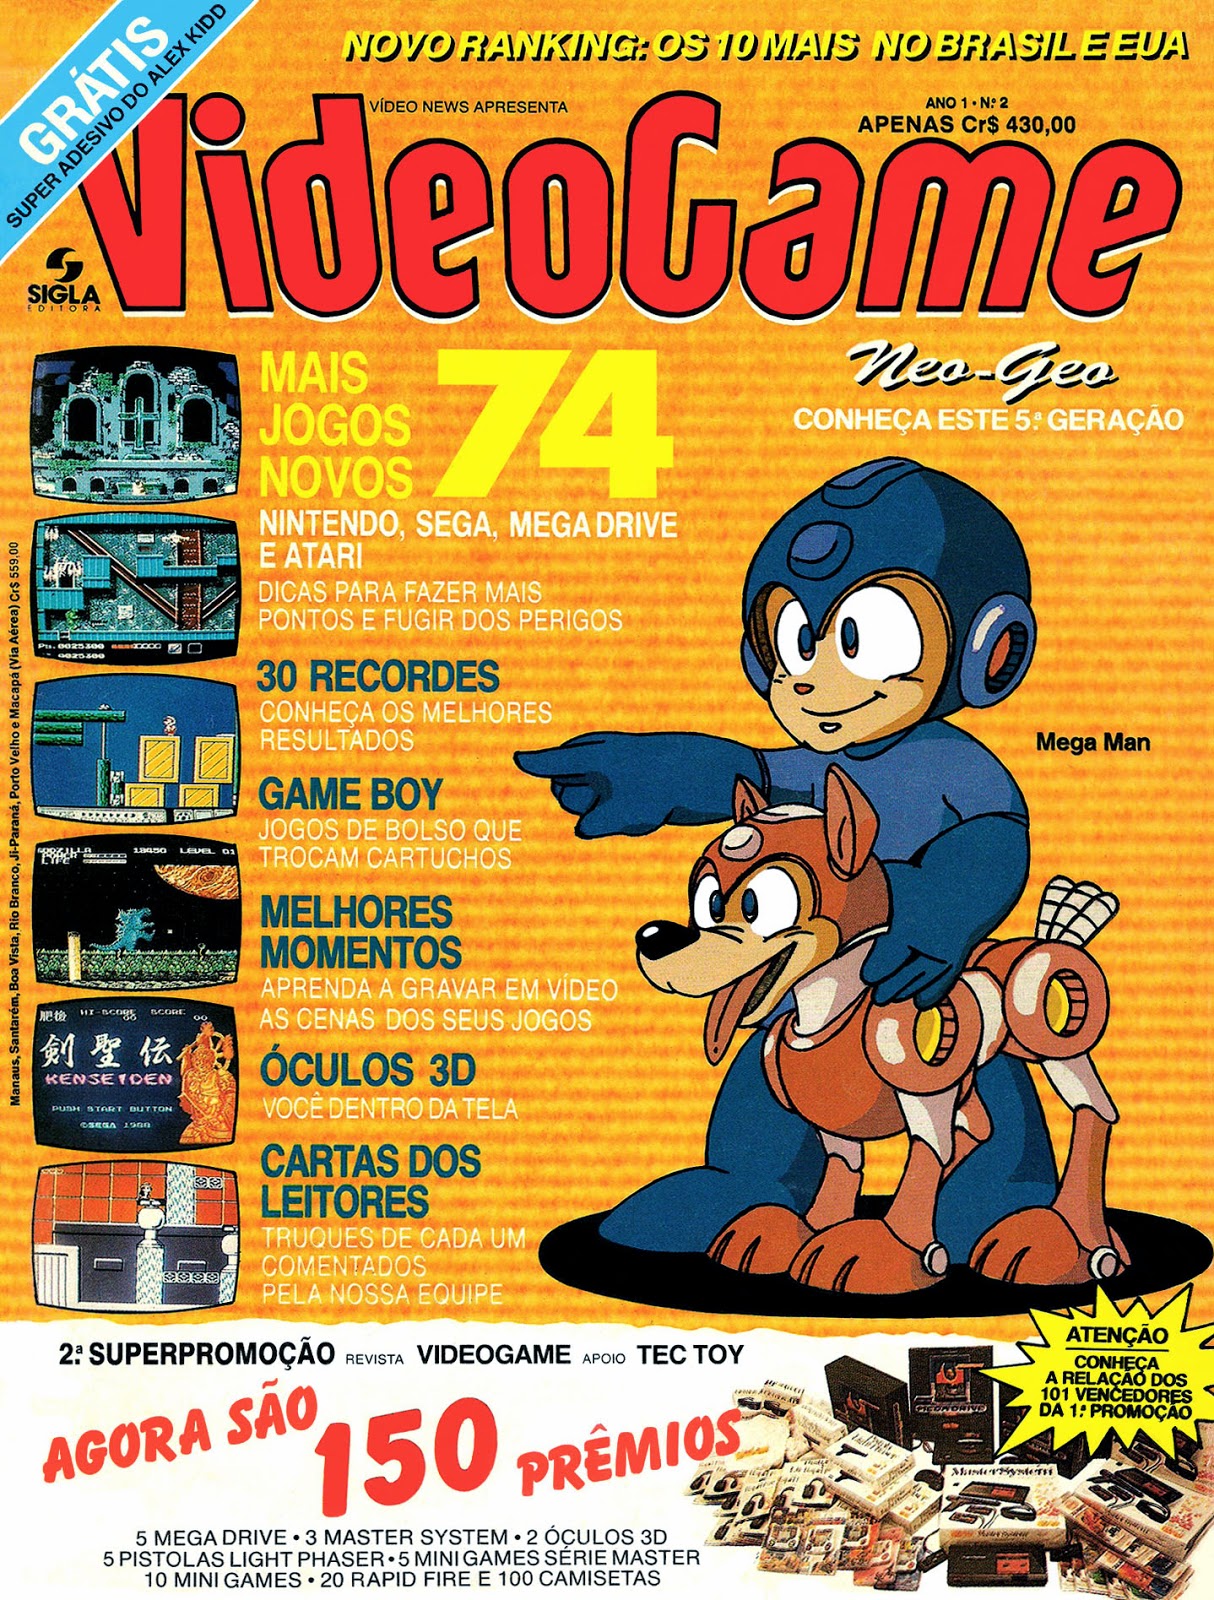 RETROAVENGERS – Página 20 – Revistas de videogame antigas